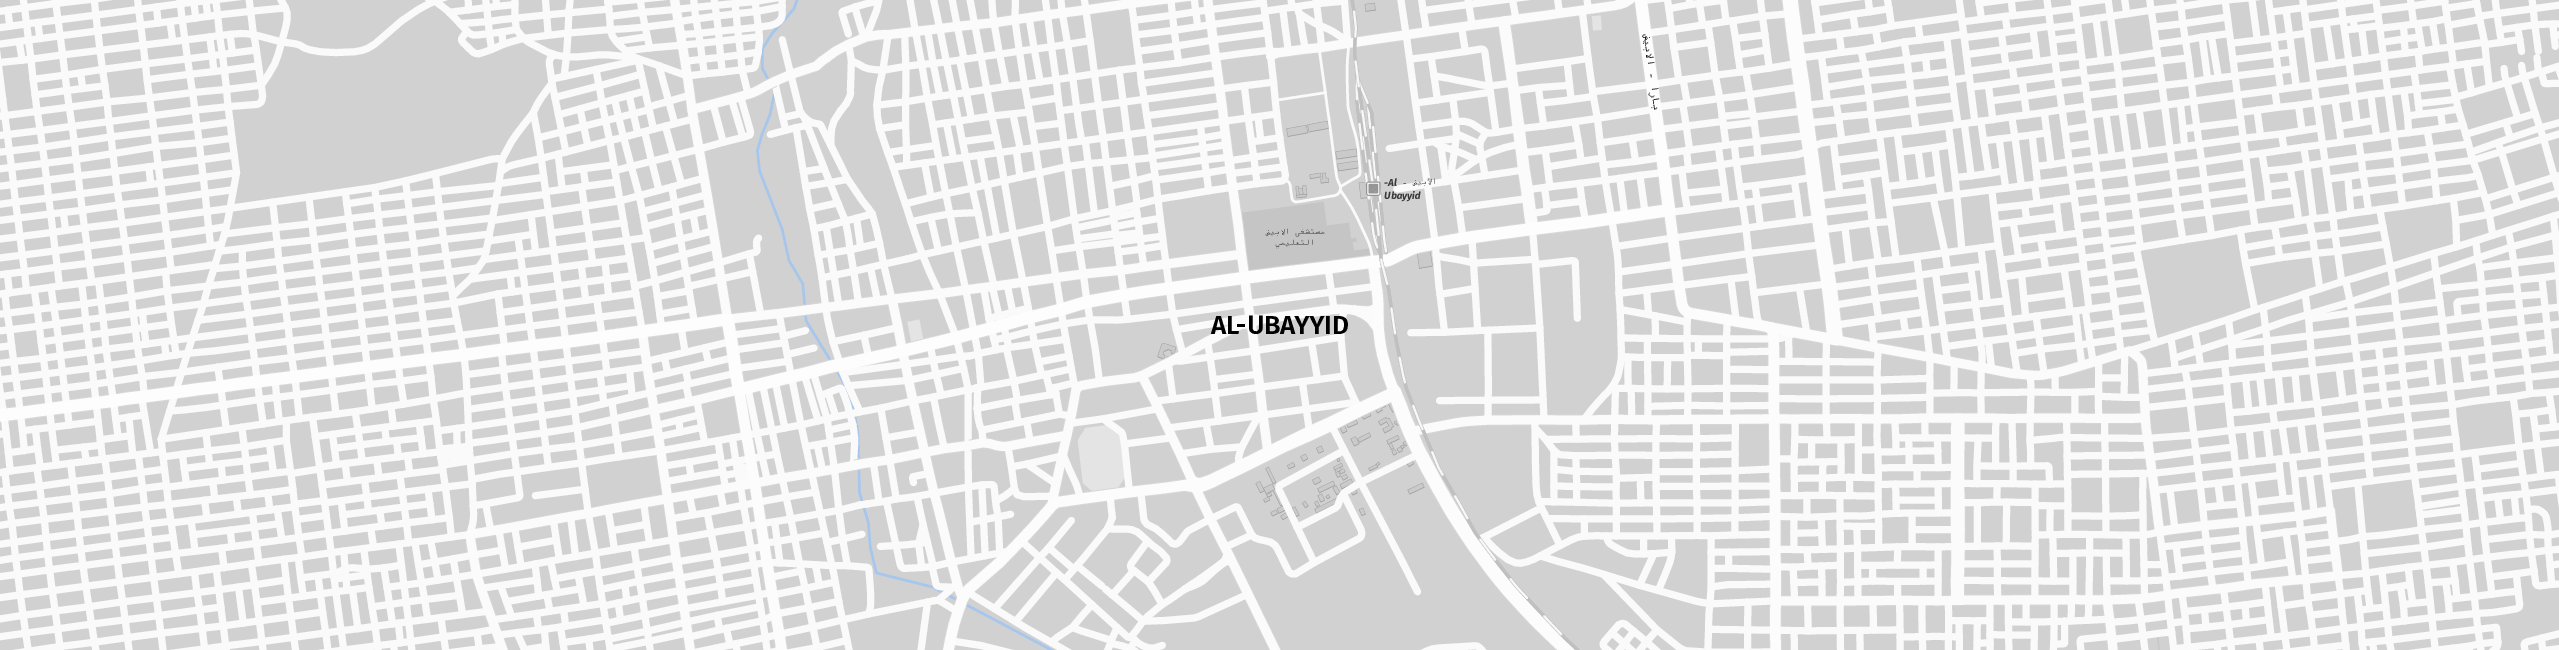 Stadtplan Al-Ubayyid zum Downloaden.